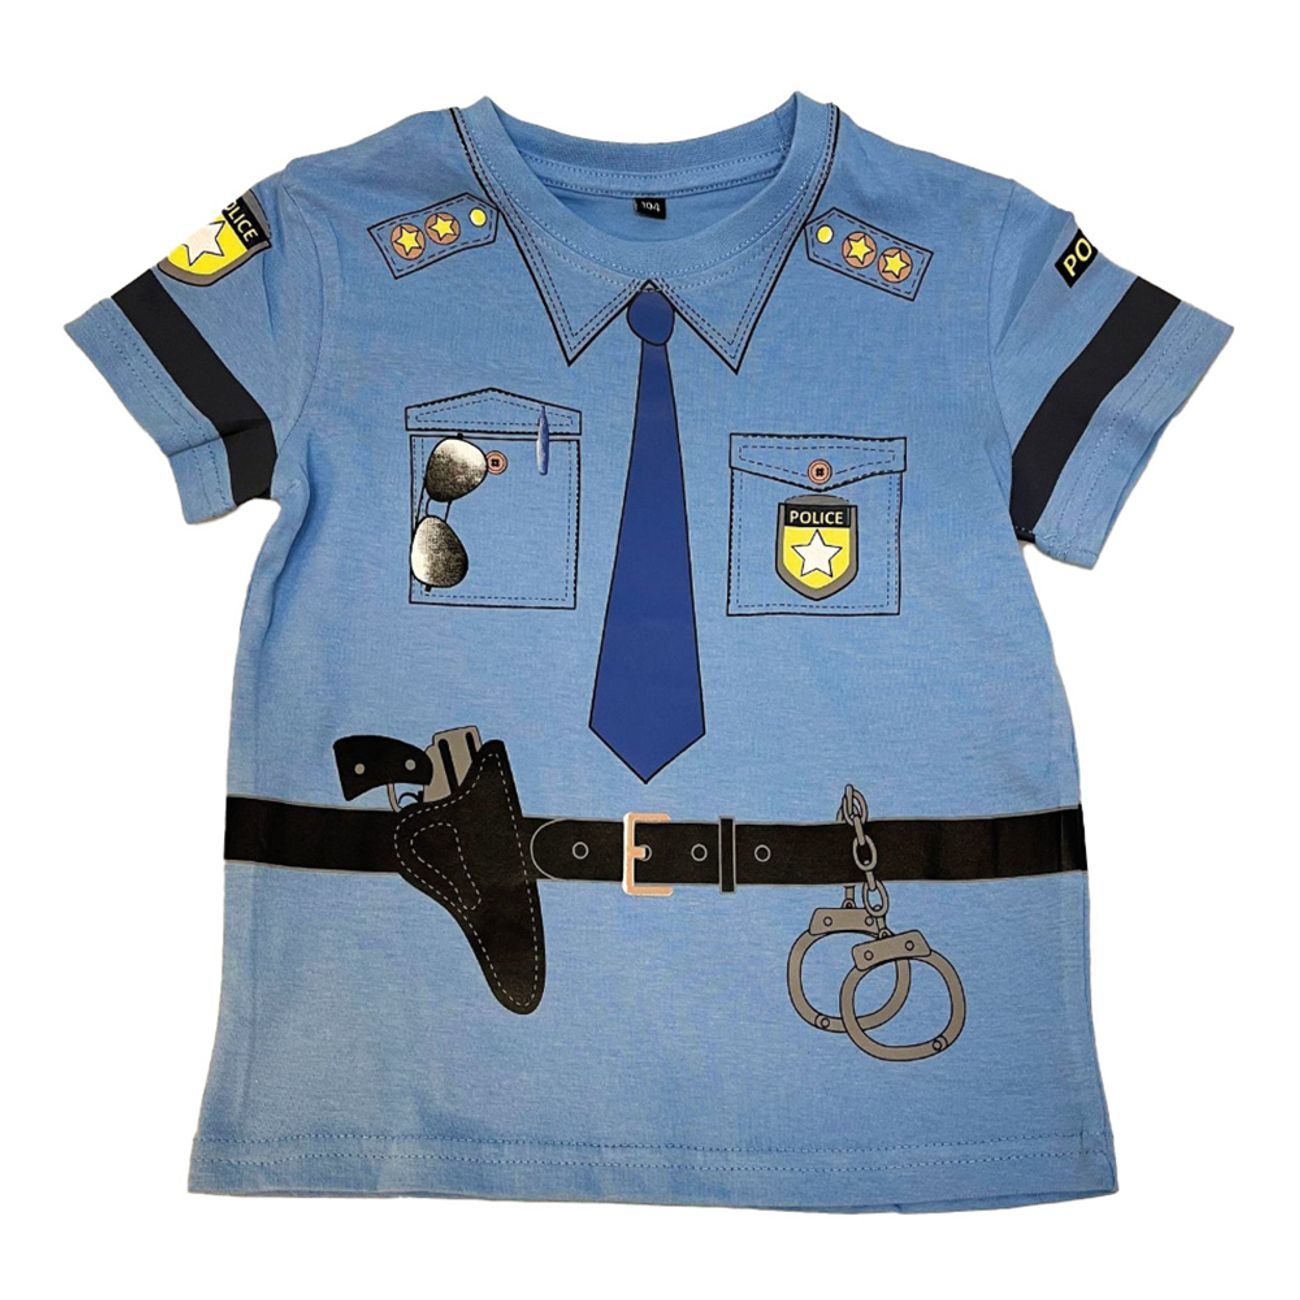 police-barn-t-shirt-85372-1